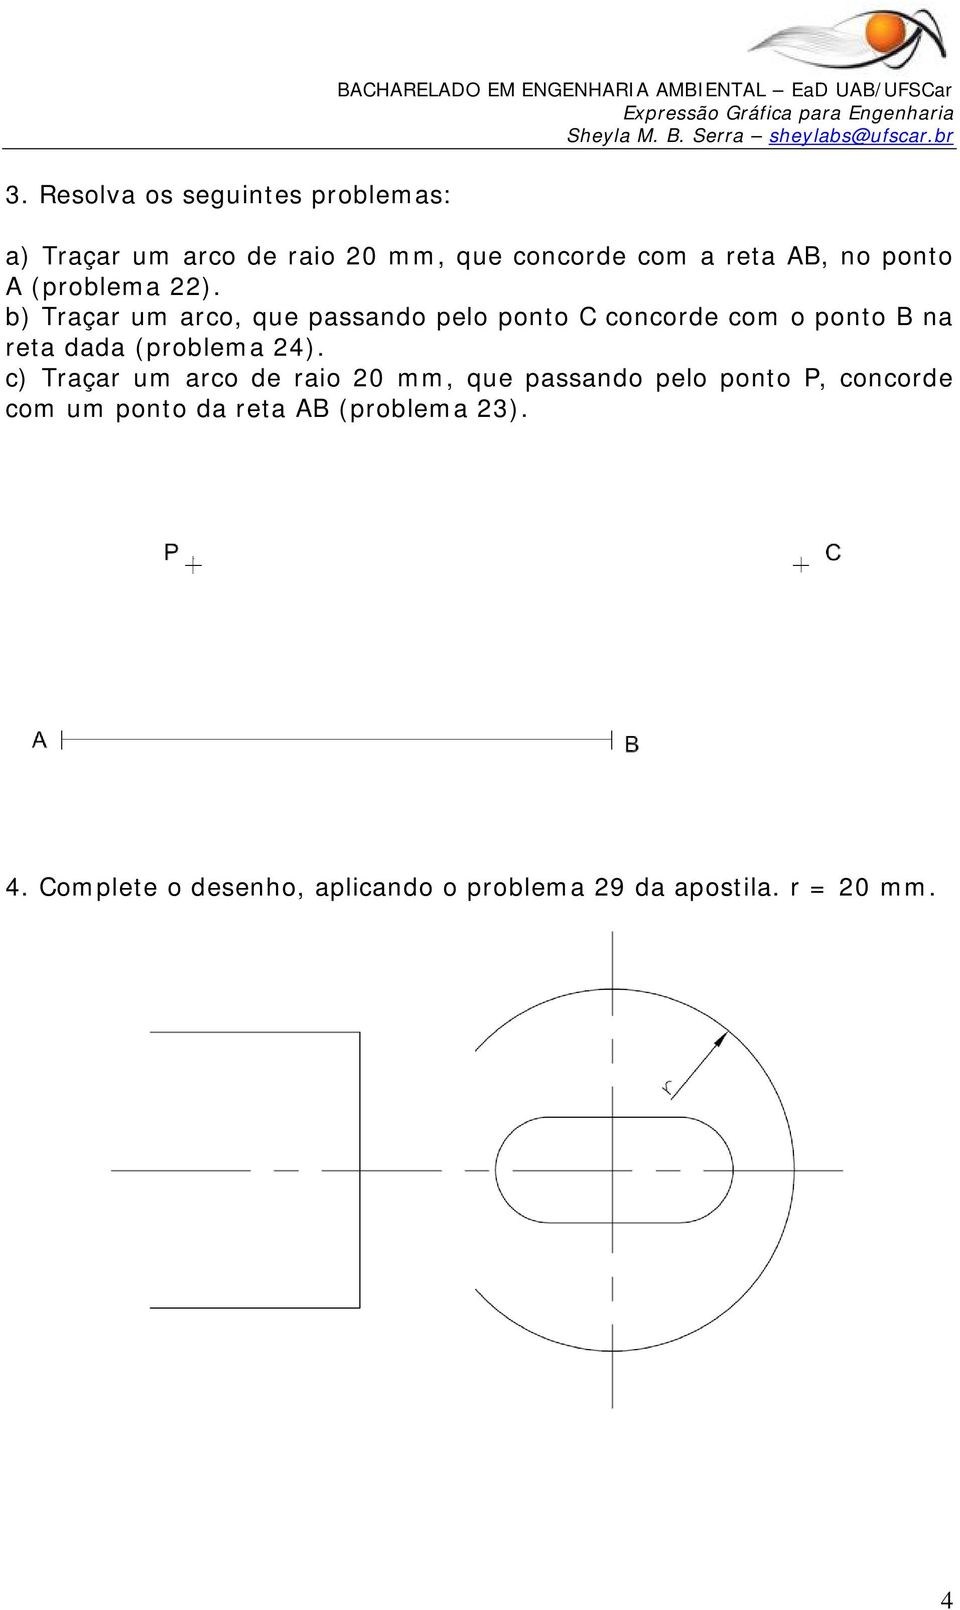 b) Traçar um arco, que passando pelo ponto C concorde com o ponto B na reta dada (problema 24).